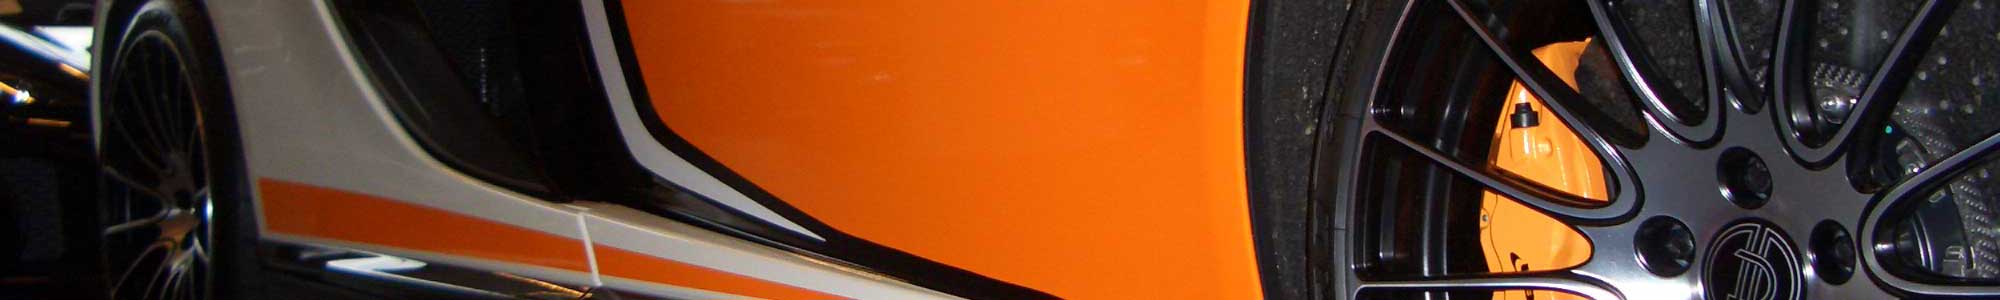 headerbild Design am McLaren 50 S in schwarz und orange